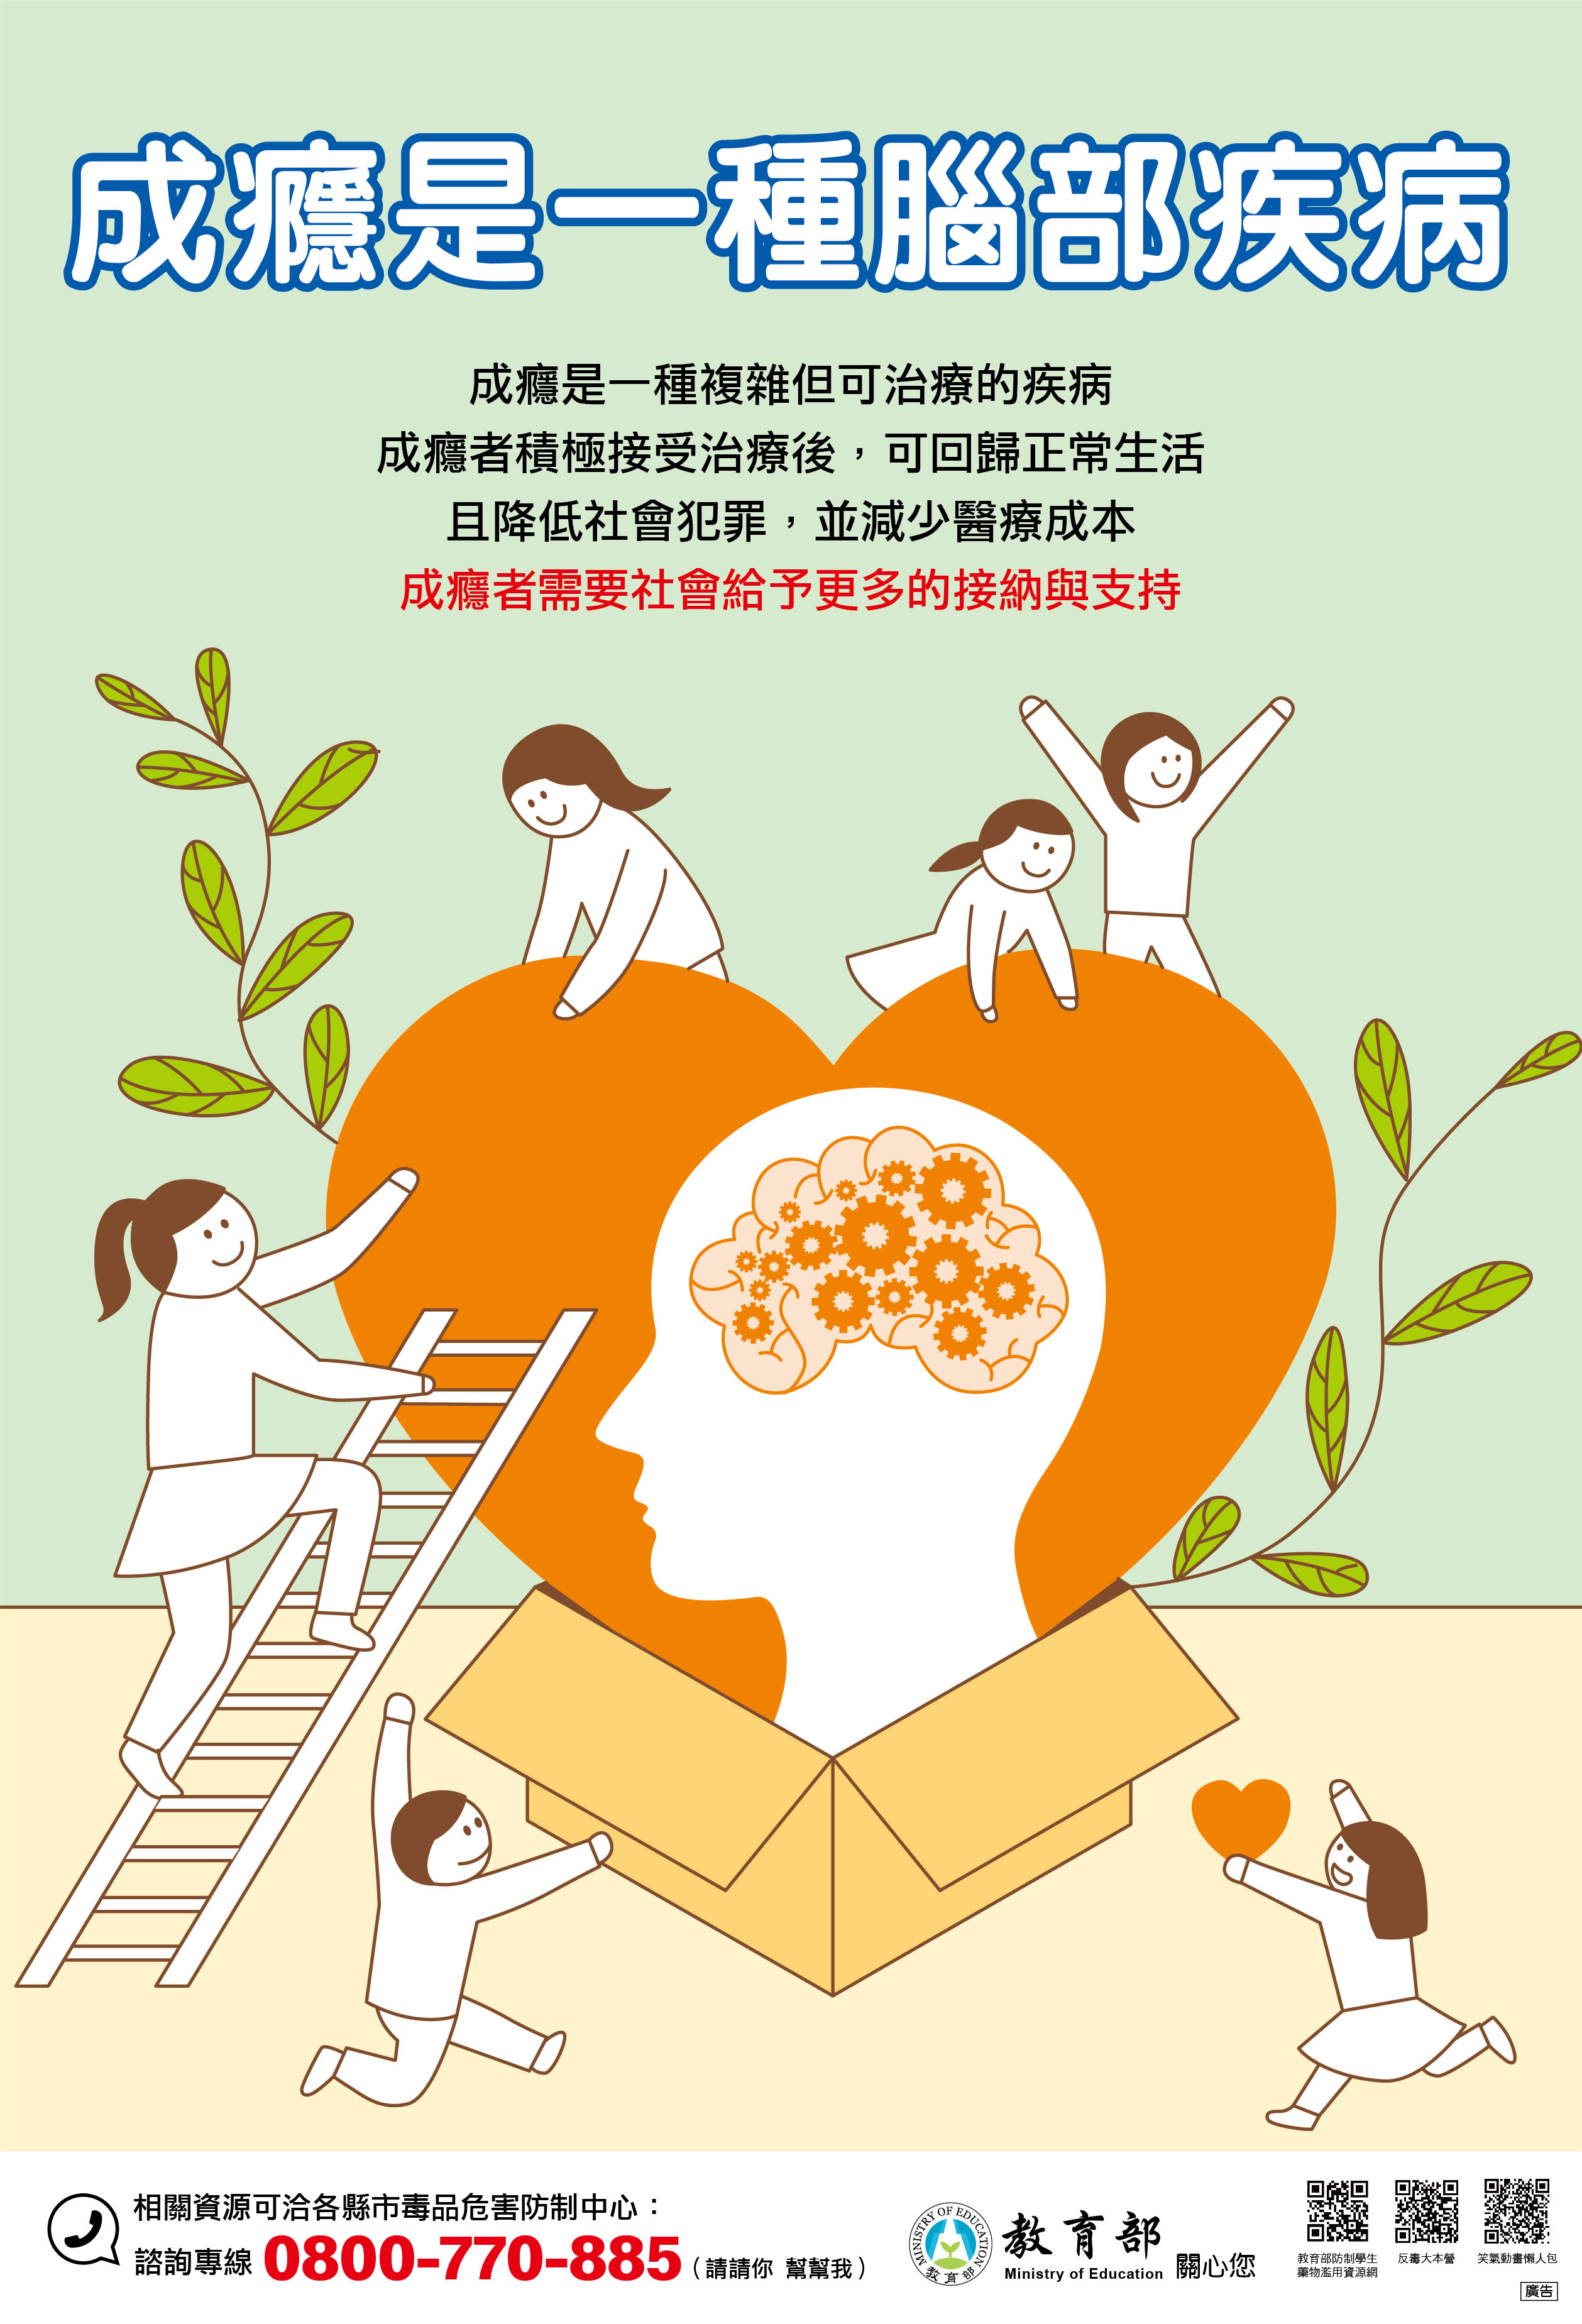 教育部製作「成癮是一種腦部疾病」文宣海報，歡迎參考運用!